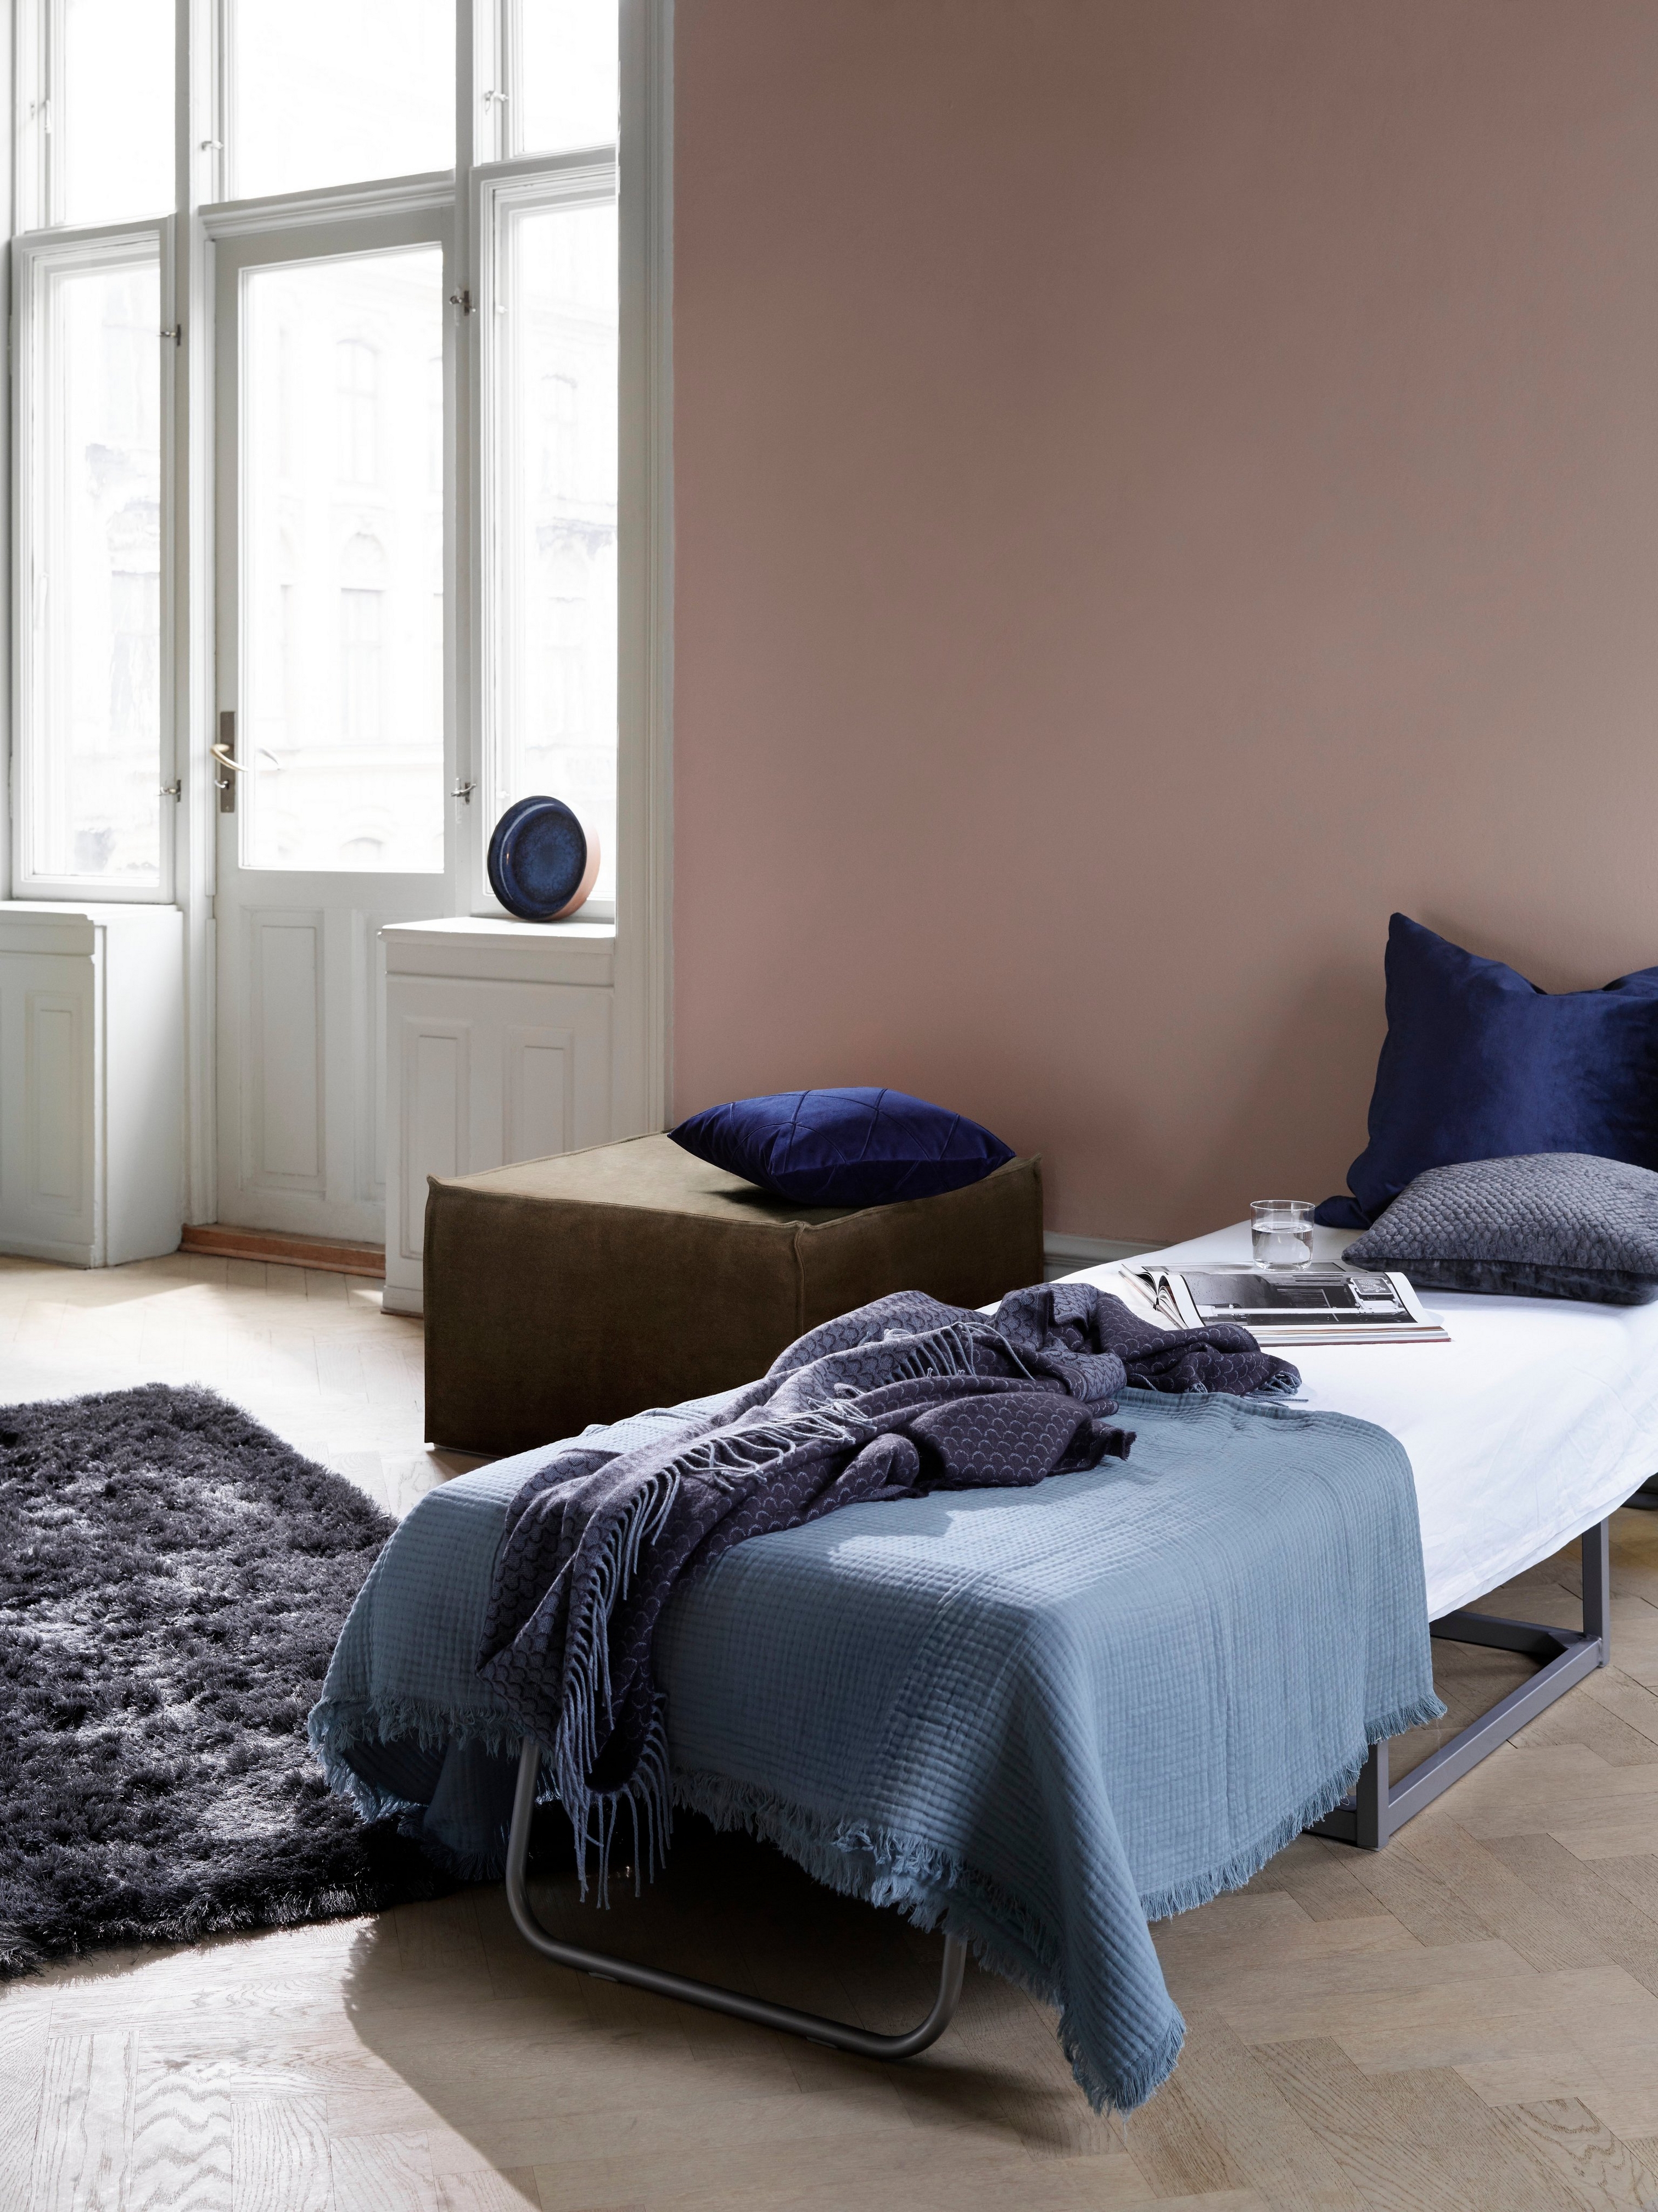 Espacio acogedor con cama para invitados, ropa de cama azul y alfombra oscura y mullida cerca de ventanas brillantes con el puf Xtra.